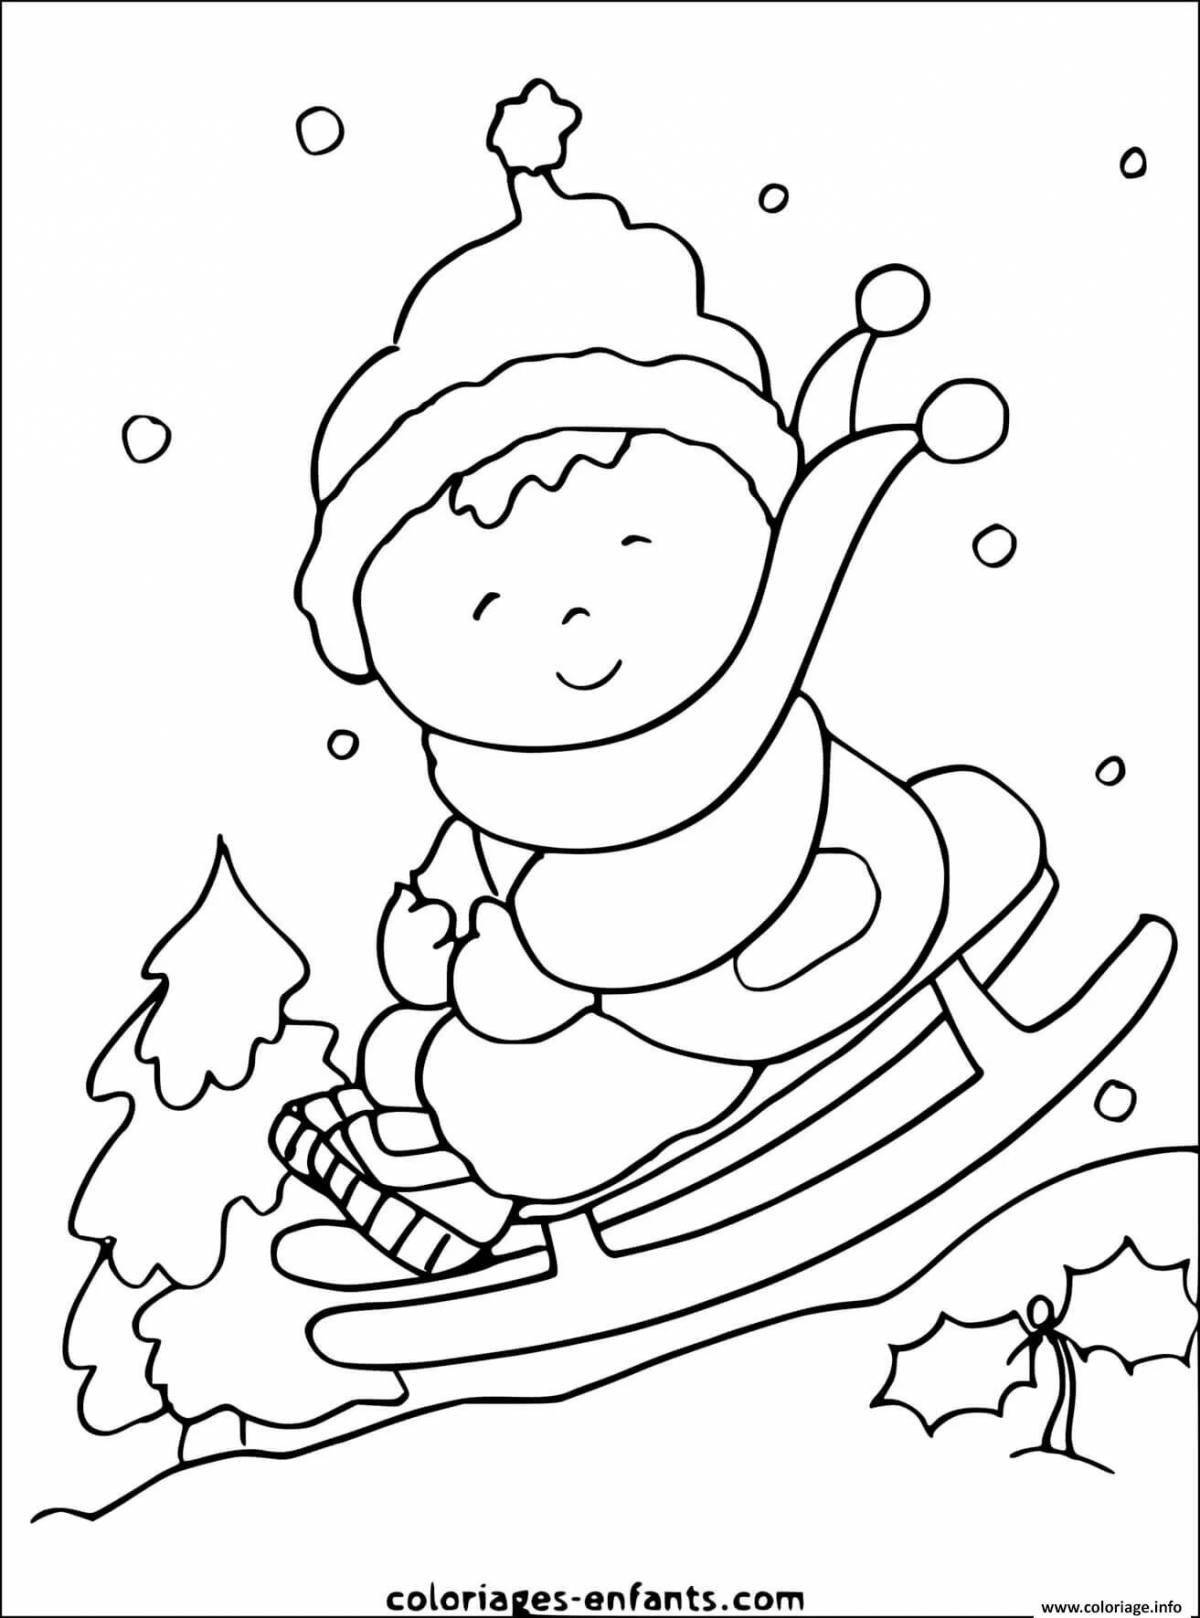 Анимированная страница раскраски «зимние забавы»